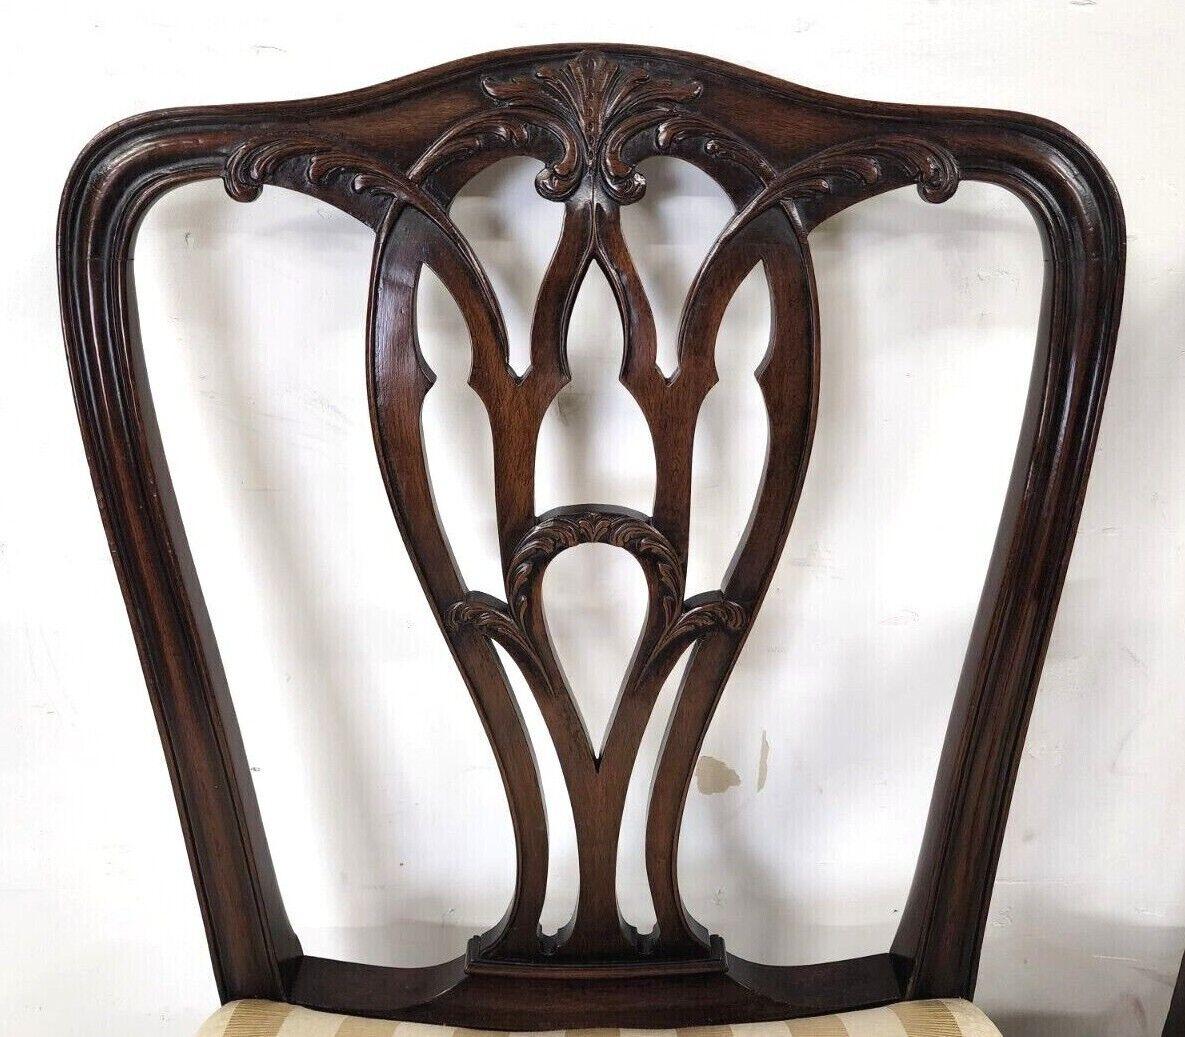 Nous vous proposons l'une de nos récentes acquisitions de mobilier de qualité de Palm Beach, un
ensemble de 6 chaises de salle à manger chippendale en acajou des années 1800 
L'ensemble comprend 4 chaises latérales et 2 fauteuils.
Le tissu est un